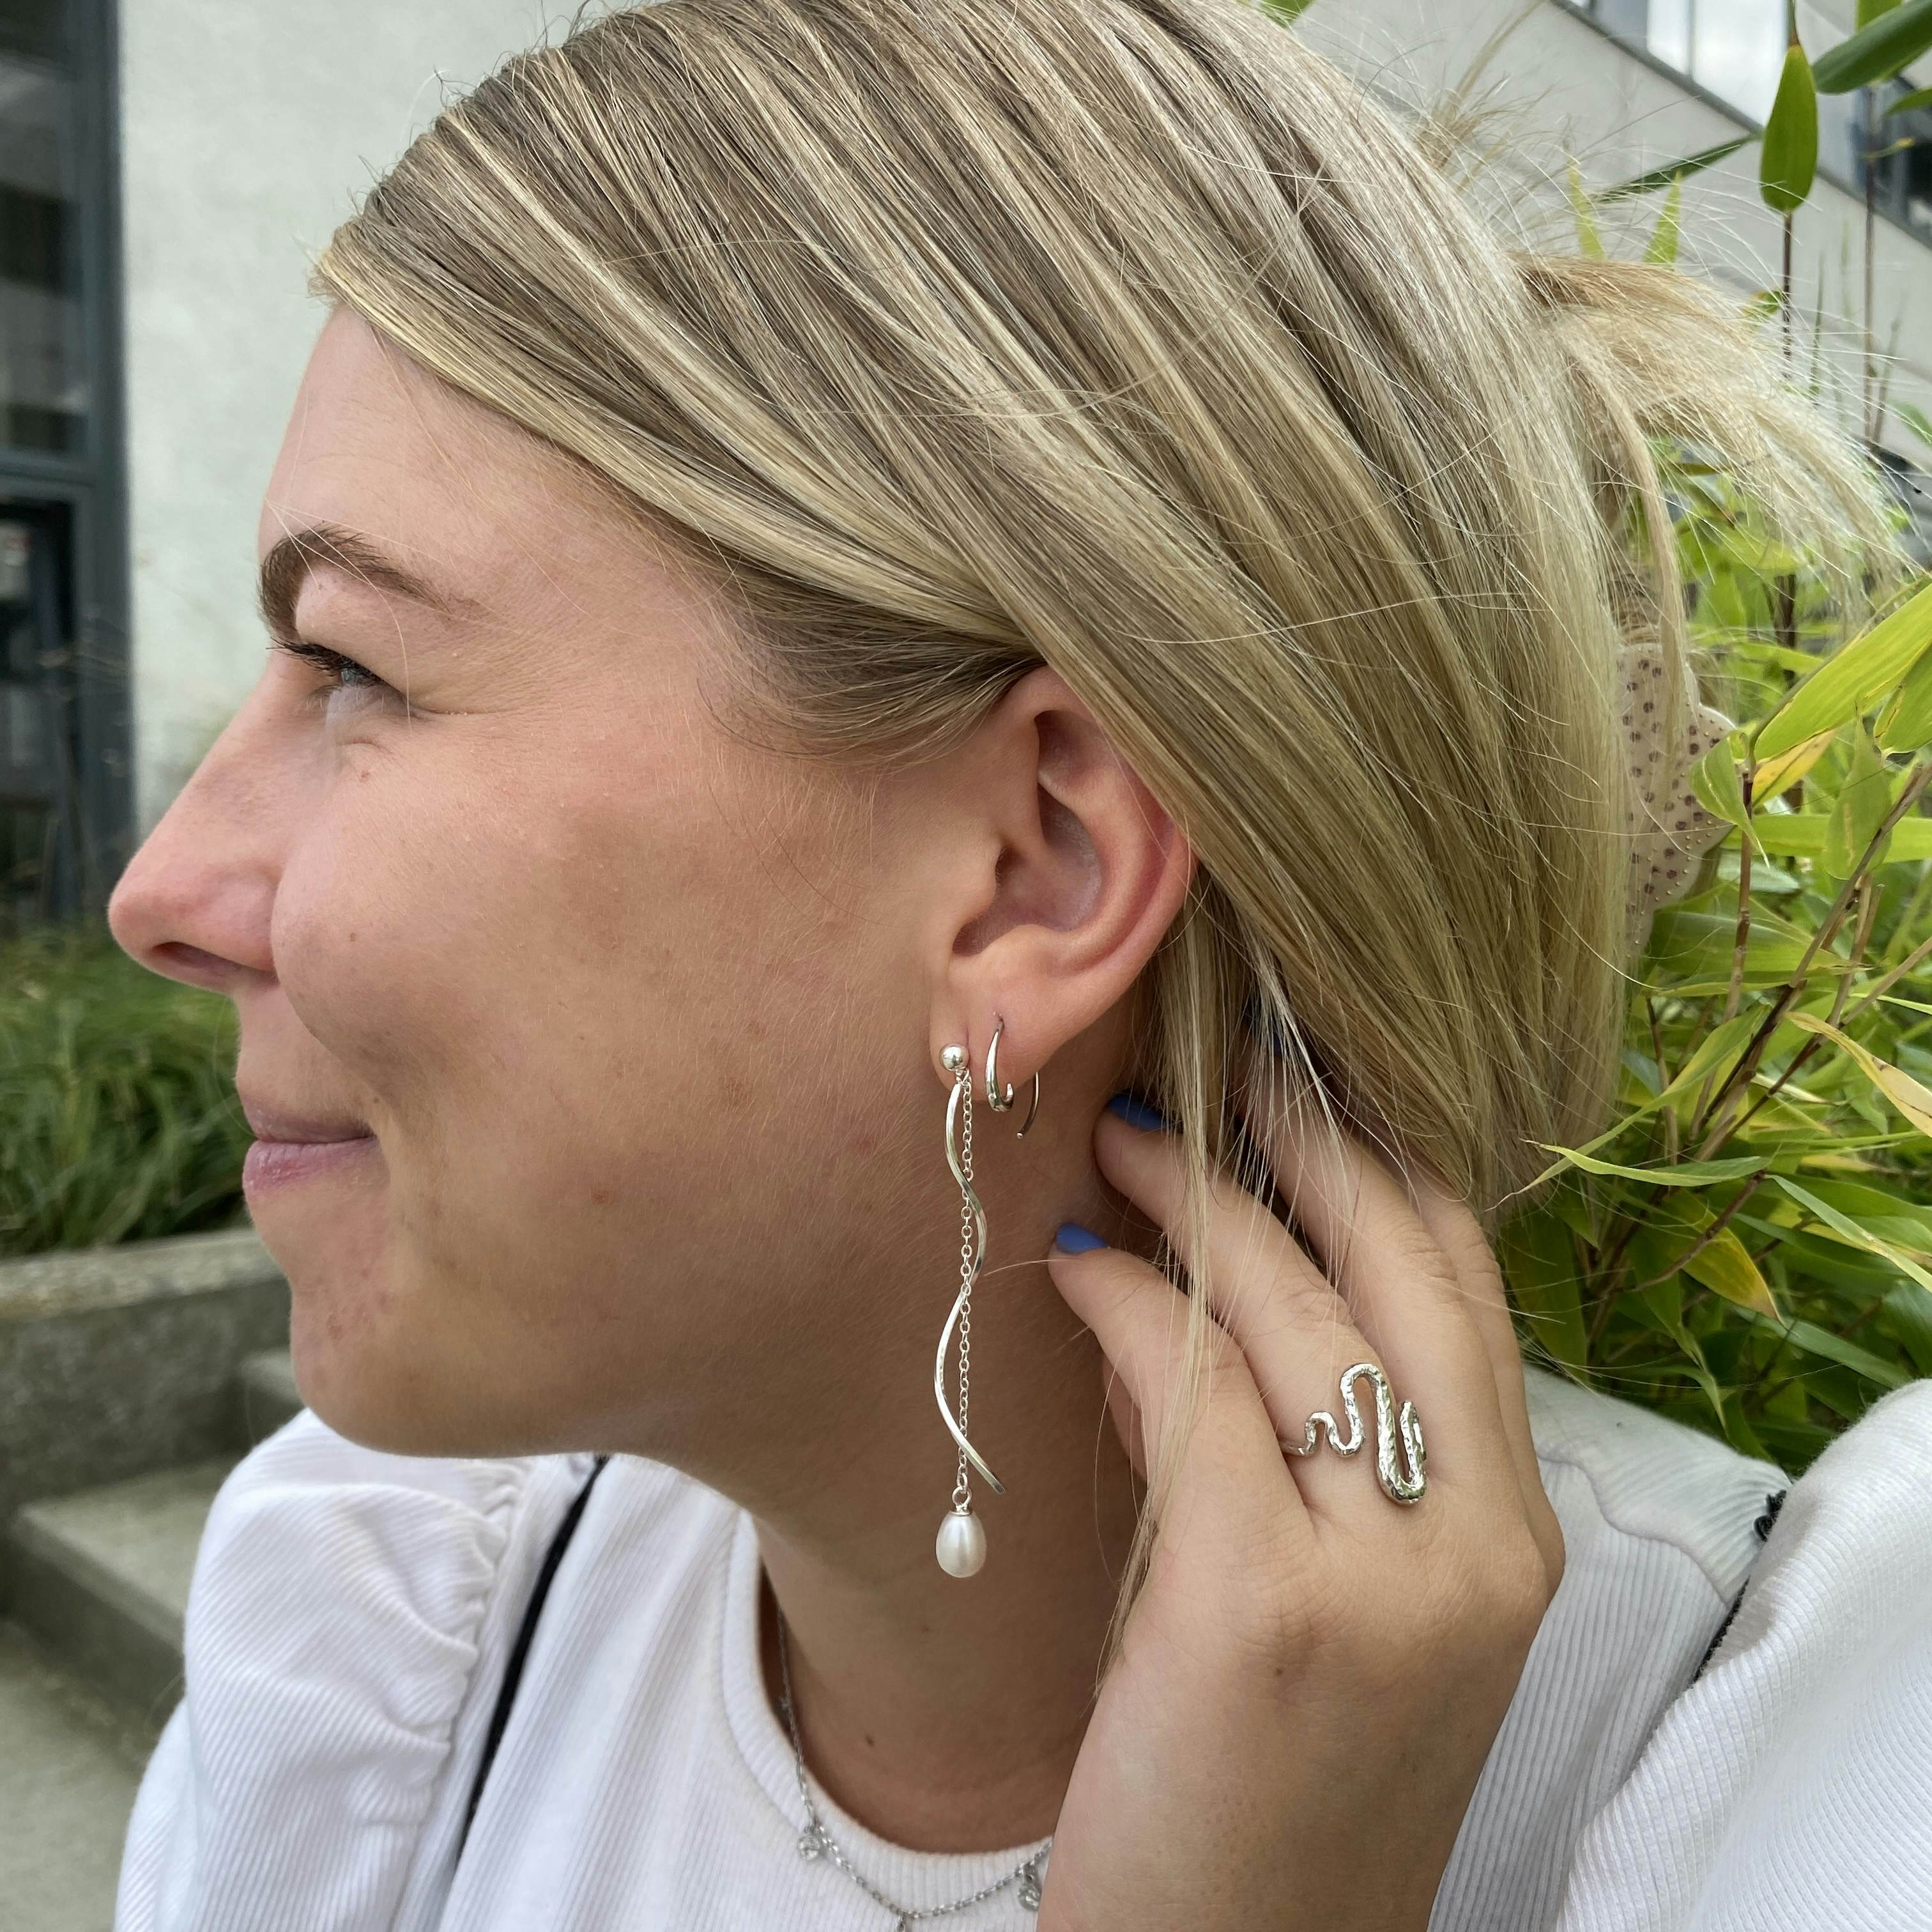 Anne Freshwaterpearl earrings from By Anne in Silver Sterling 925